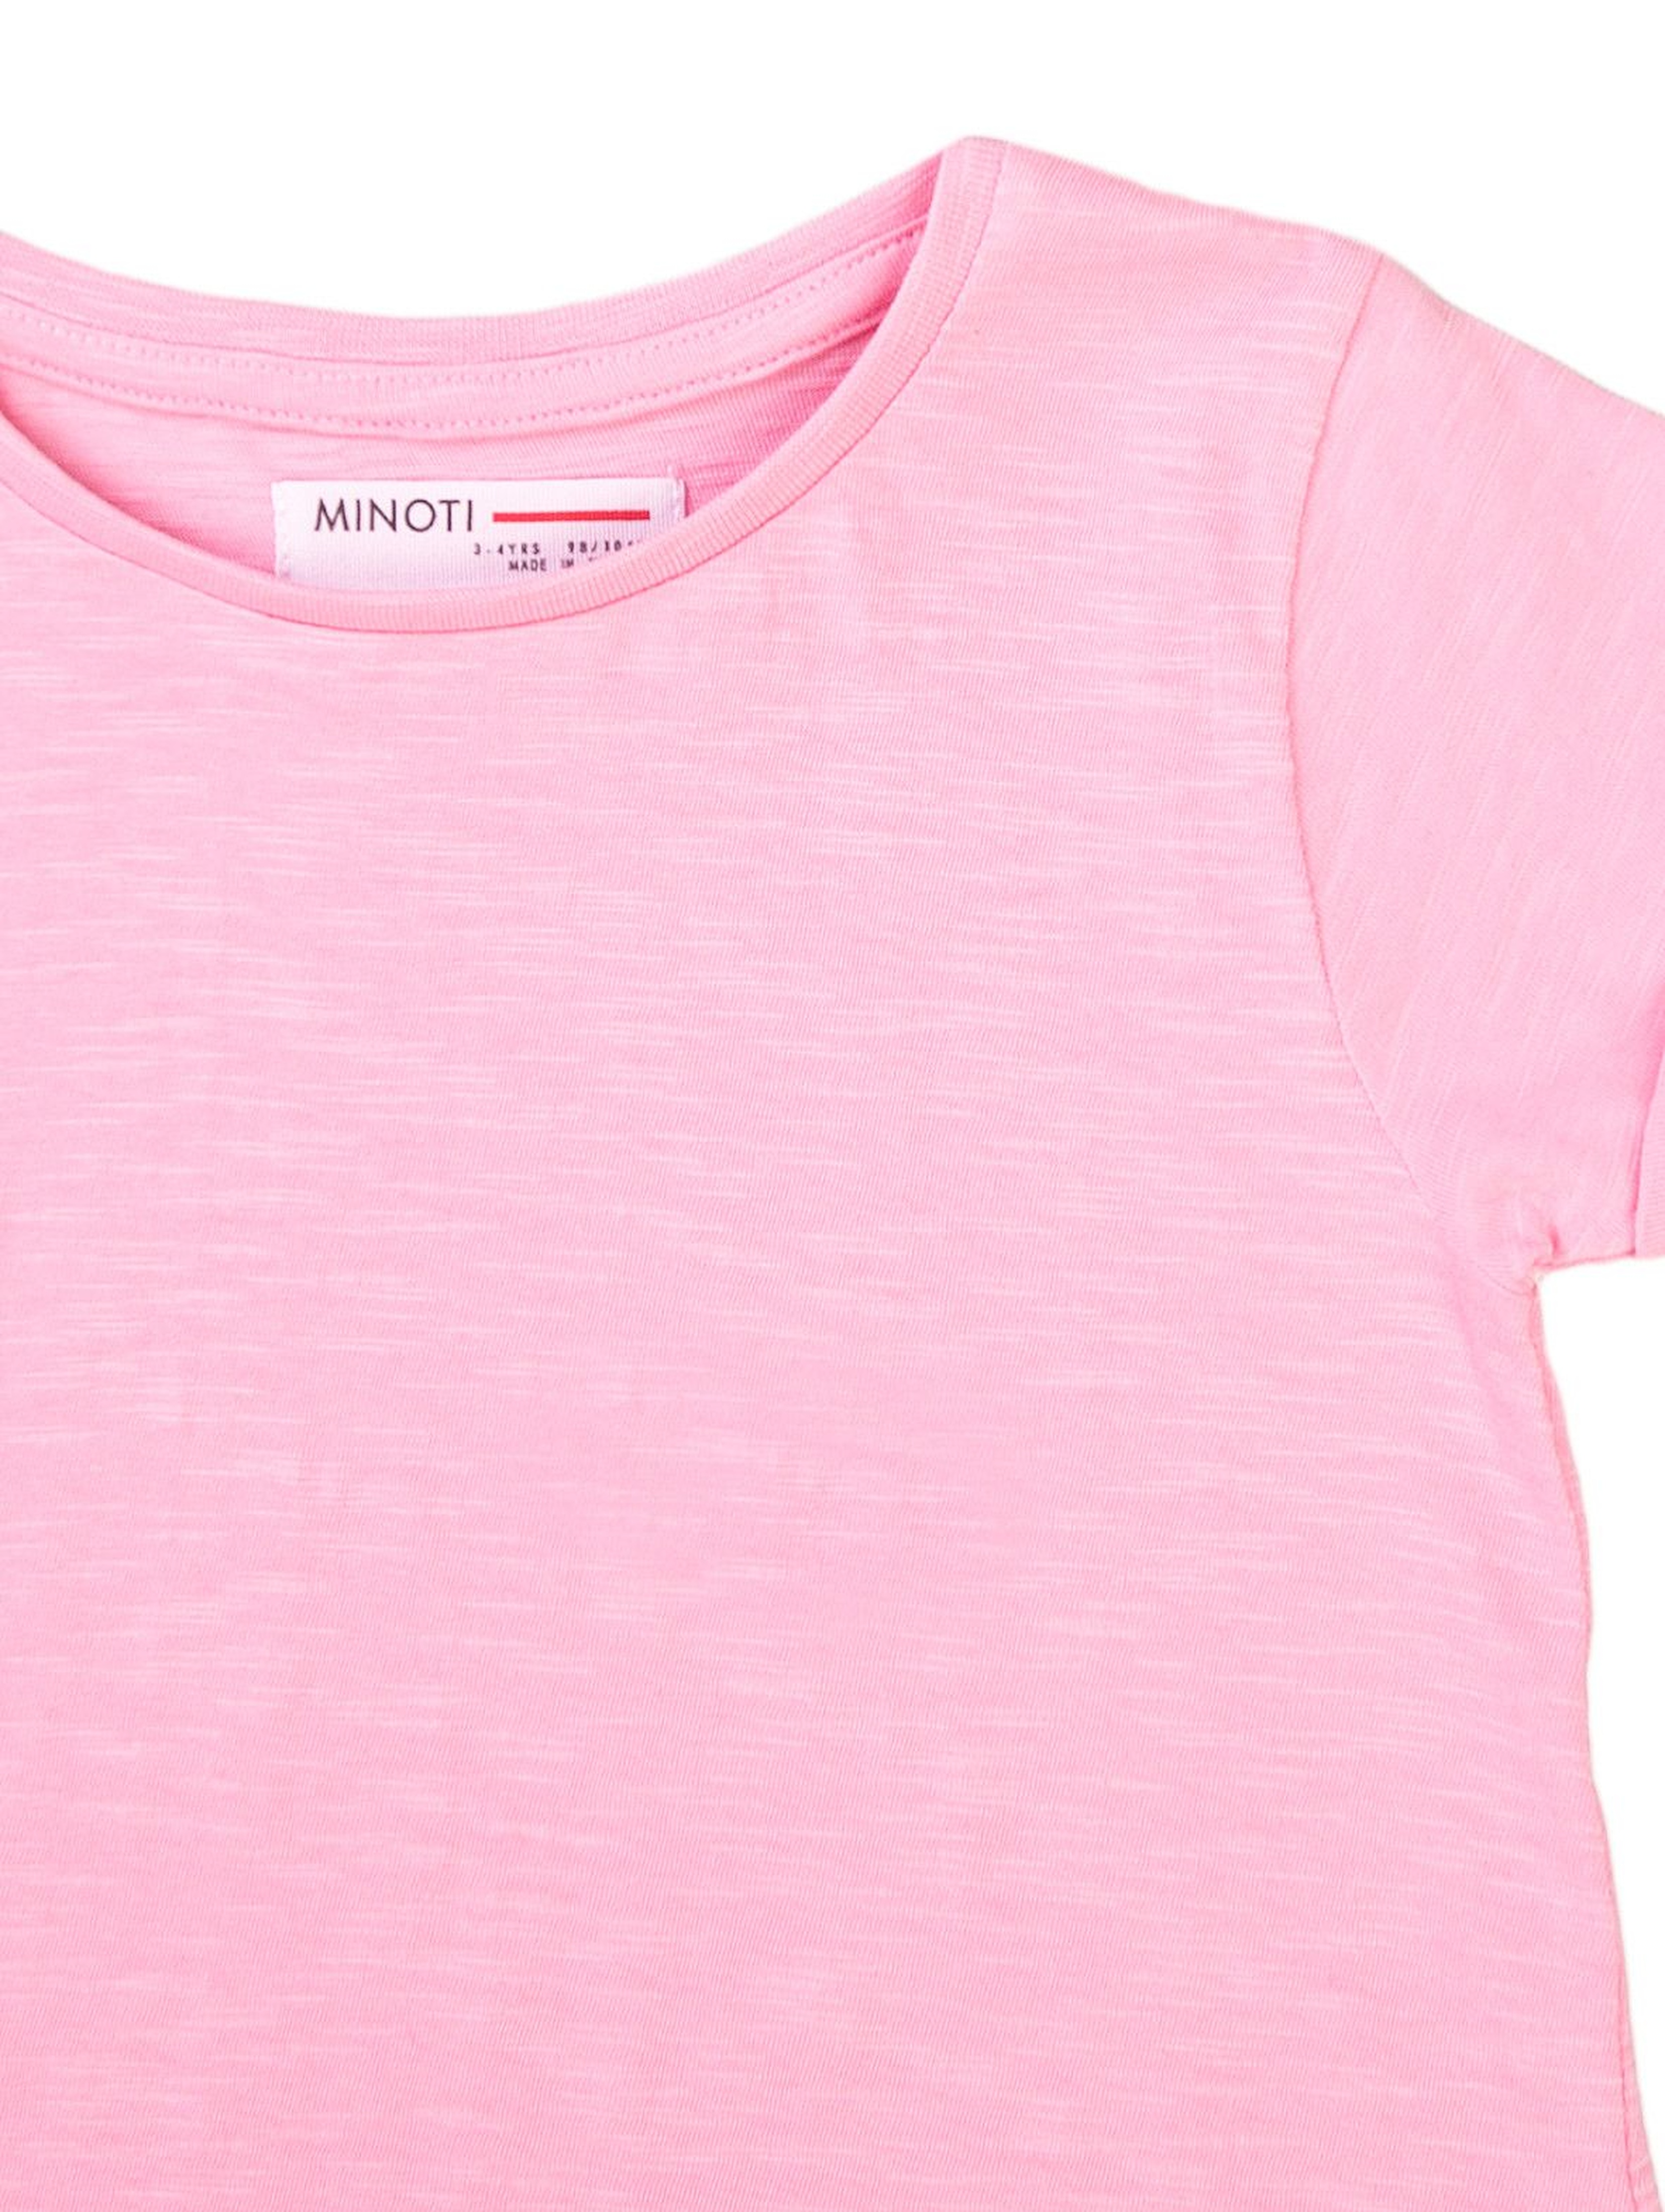 T-shirt dziewczęcy klasyczny różowy